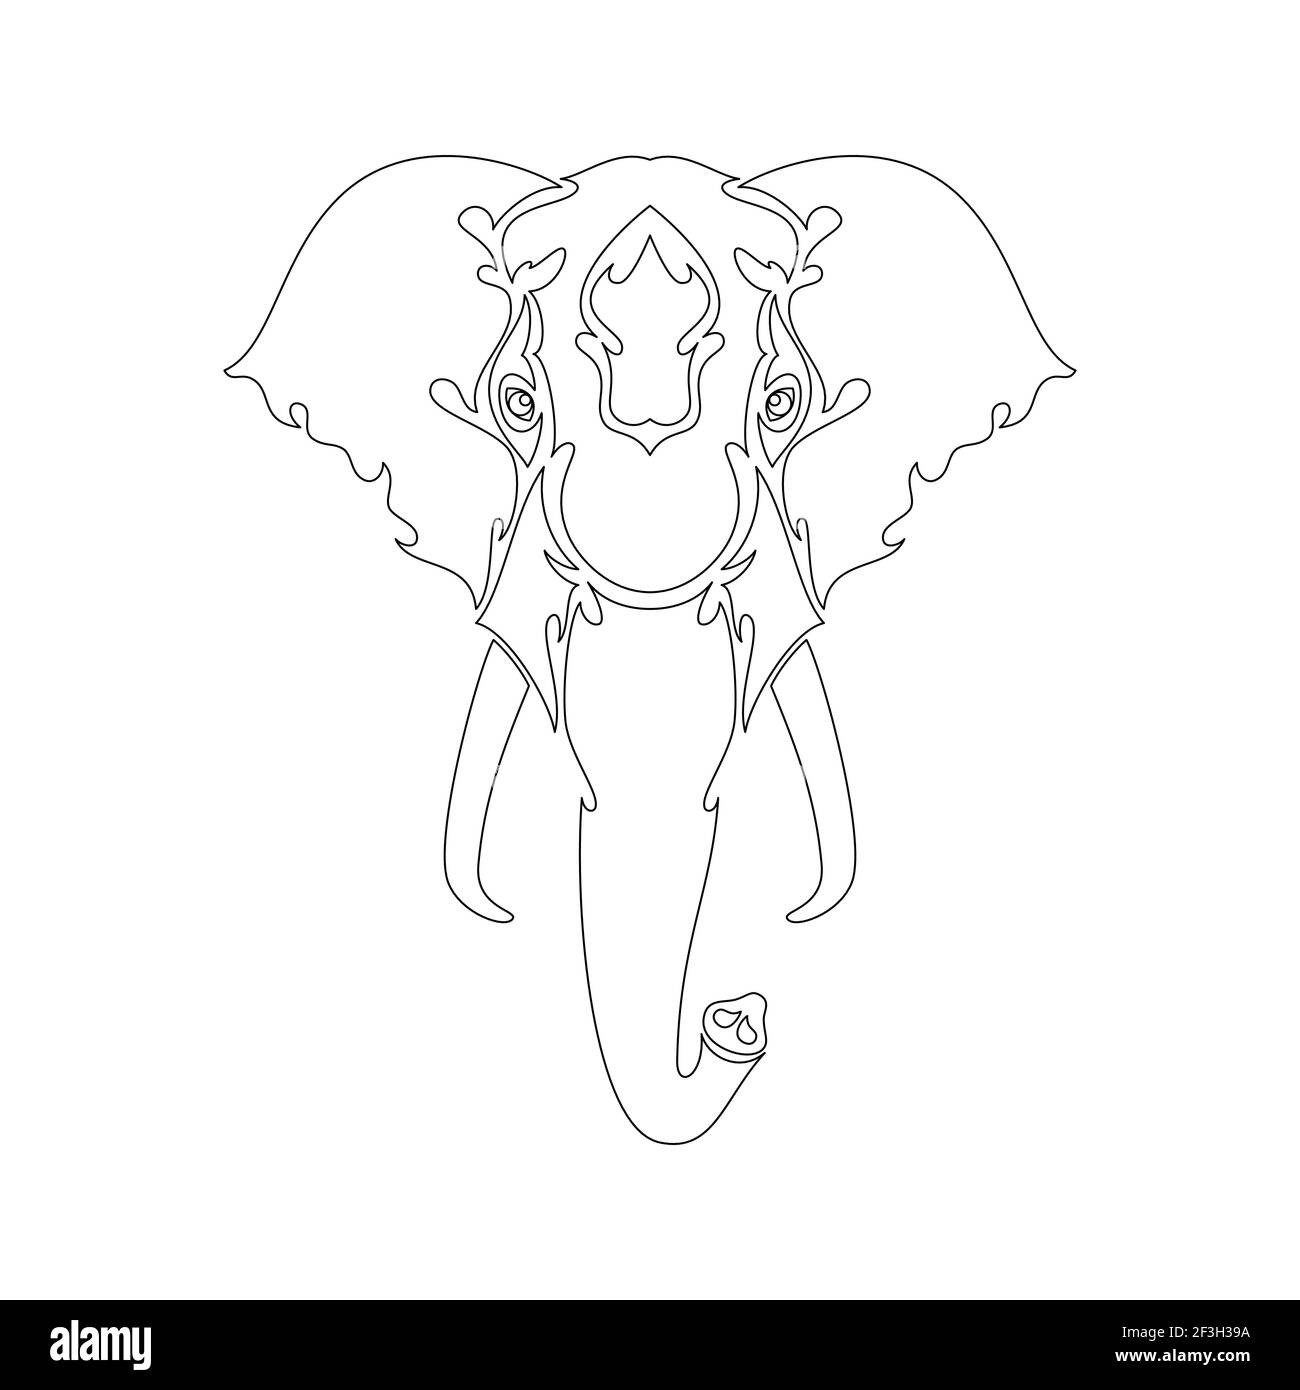 Handgezeichnetes abstraktes Porträt eines Elefanten für Tattoo, Logo, Wanddekor, T-Shirt-Print-Design oder outwear. Vektor-stilisierte Illustration Stock Vektor